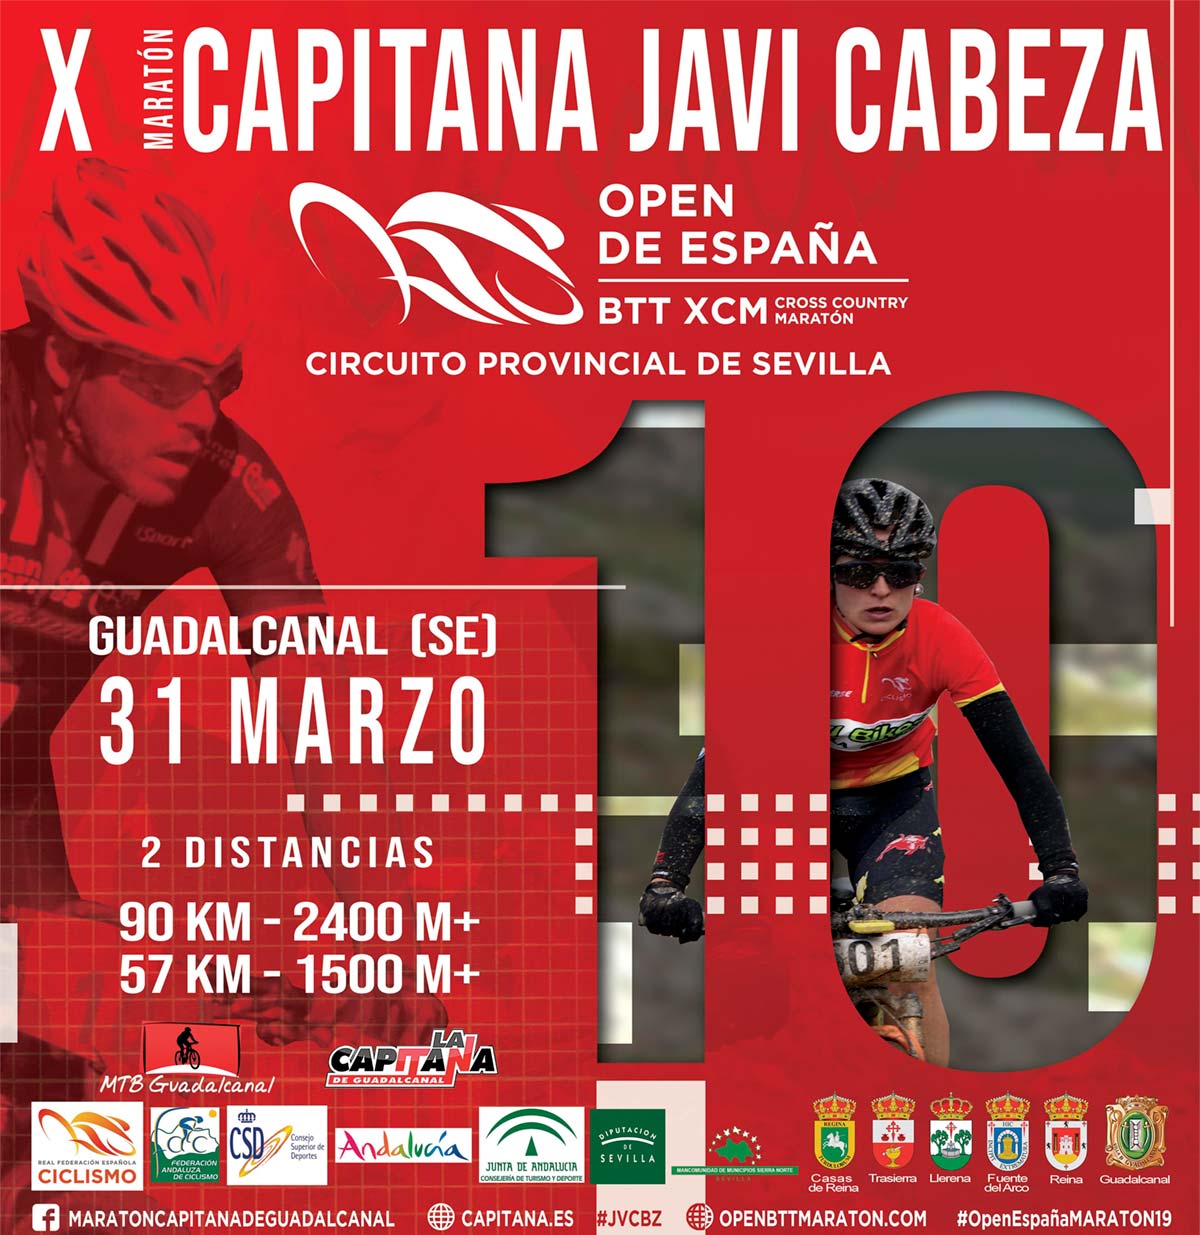 La penúltima cita del Open de España de XCM se decide en la X Maratón Capitana Javi Cabeza